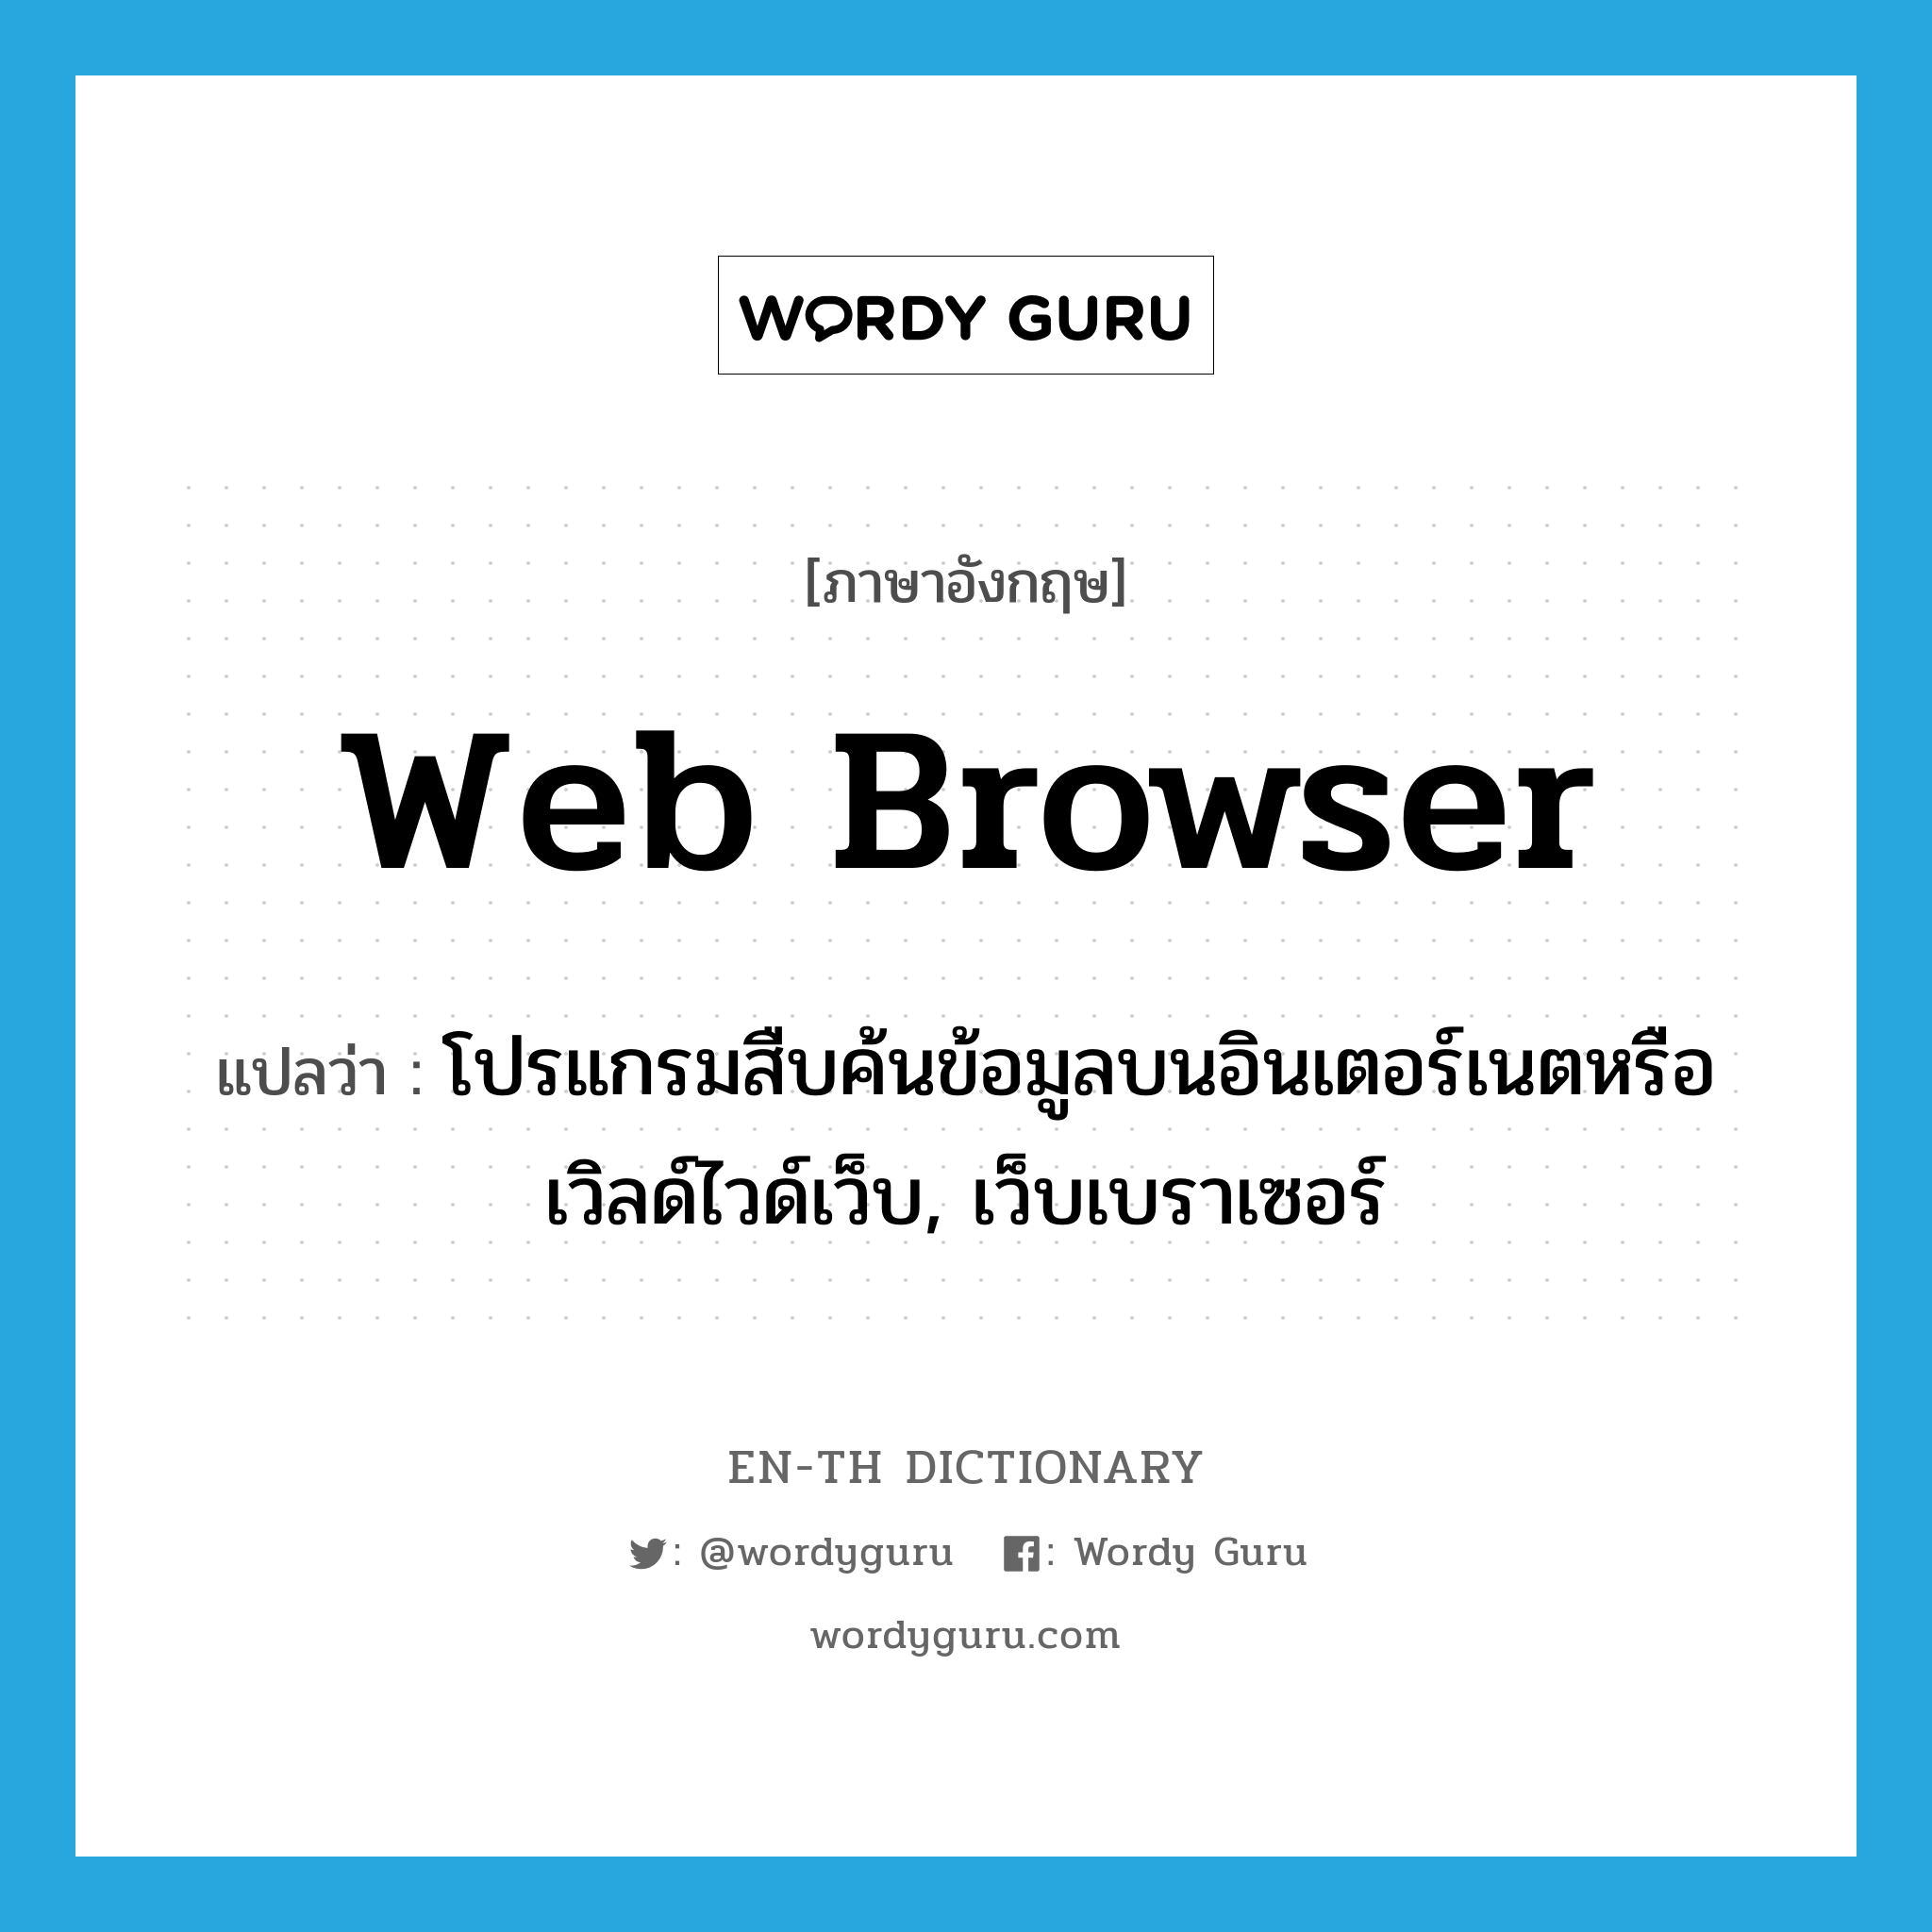 โปรแกรมสืบค้นข้อมูลบนอินเตอร์เนตหรือเวิลด์ไวด์เว็บ, เว็บเบราเซอร์ ภาษาอังกฤษ?, คำศัพท์ภาษาอังกฤษ โปรแกรมสืบค้นข้อมูลบนอินเตอร์เนตหรือเวิลด์ไวด์เว็บ, เว็บเบราเซอร์ แปลว่า Web Browser ประเภท N หมวด N